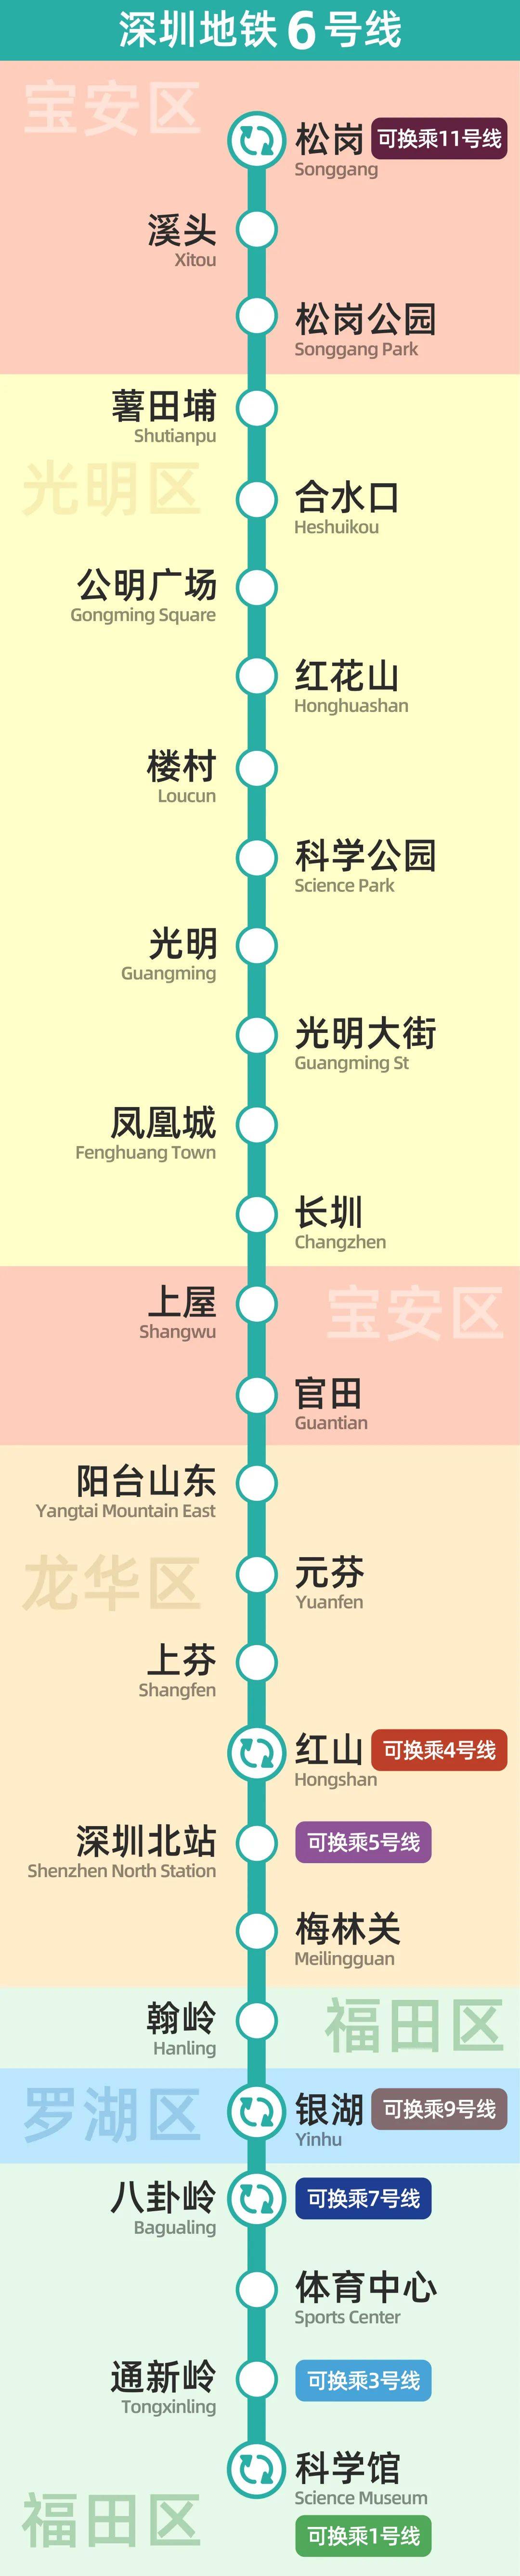 深圳地铁试点!可短时免费出站!